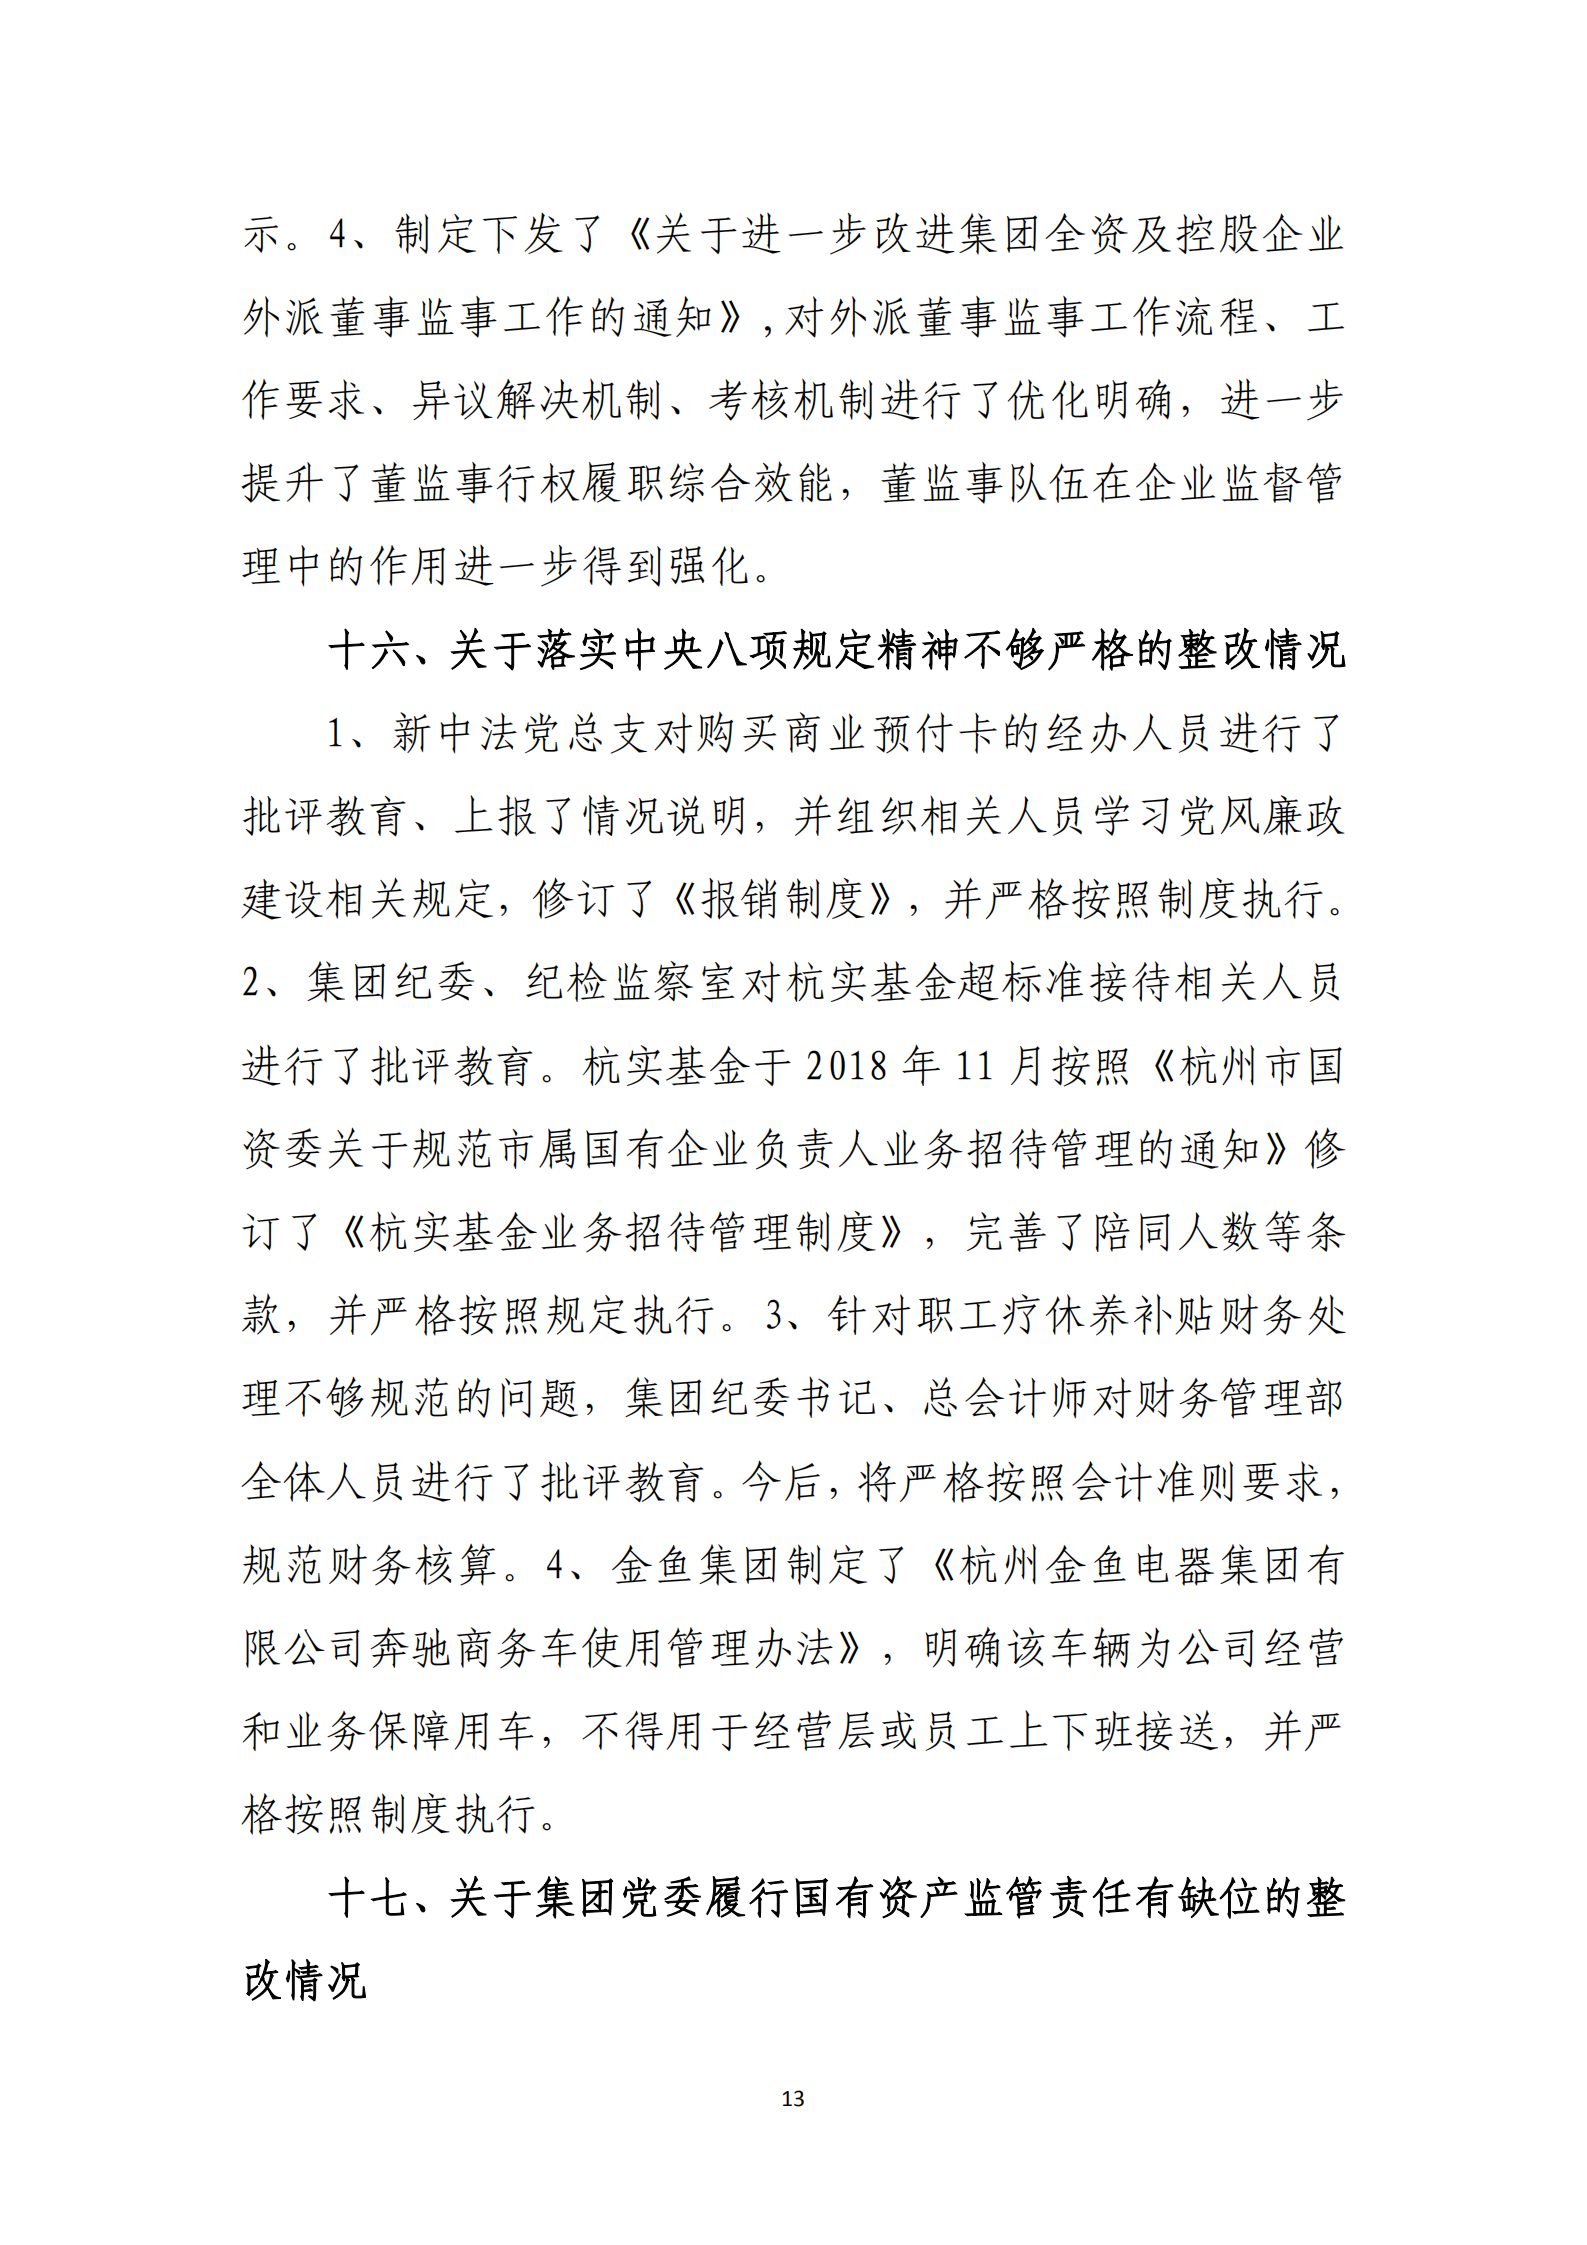 【体育365官方网站】中国有限公司党委关于巡察整改情况的通报_12.png